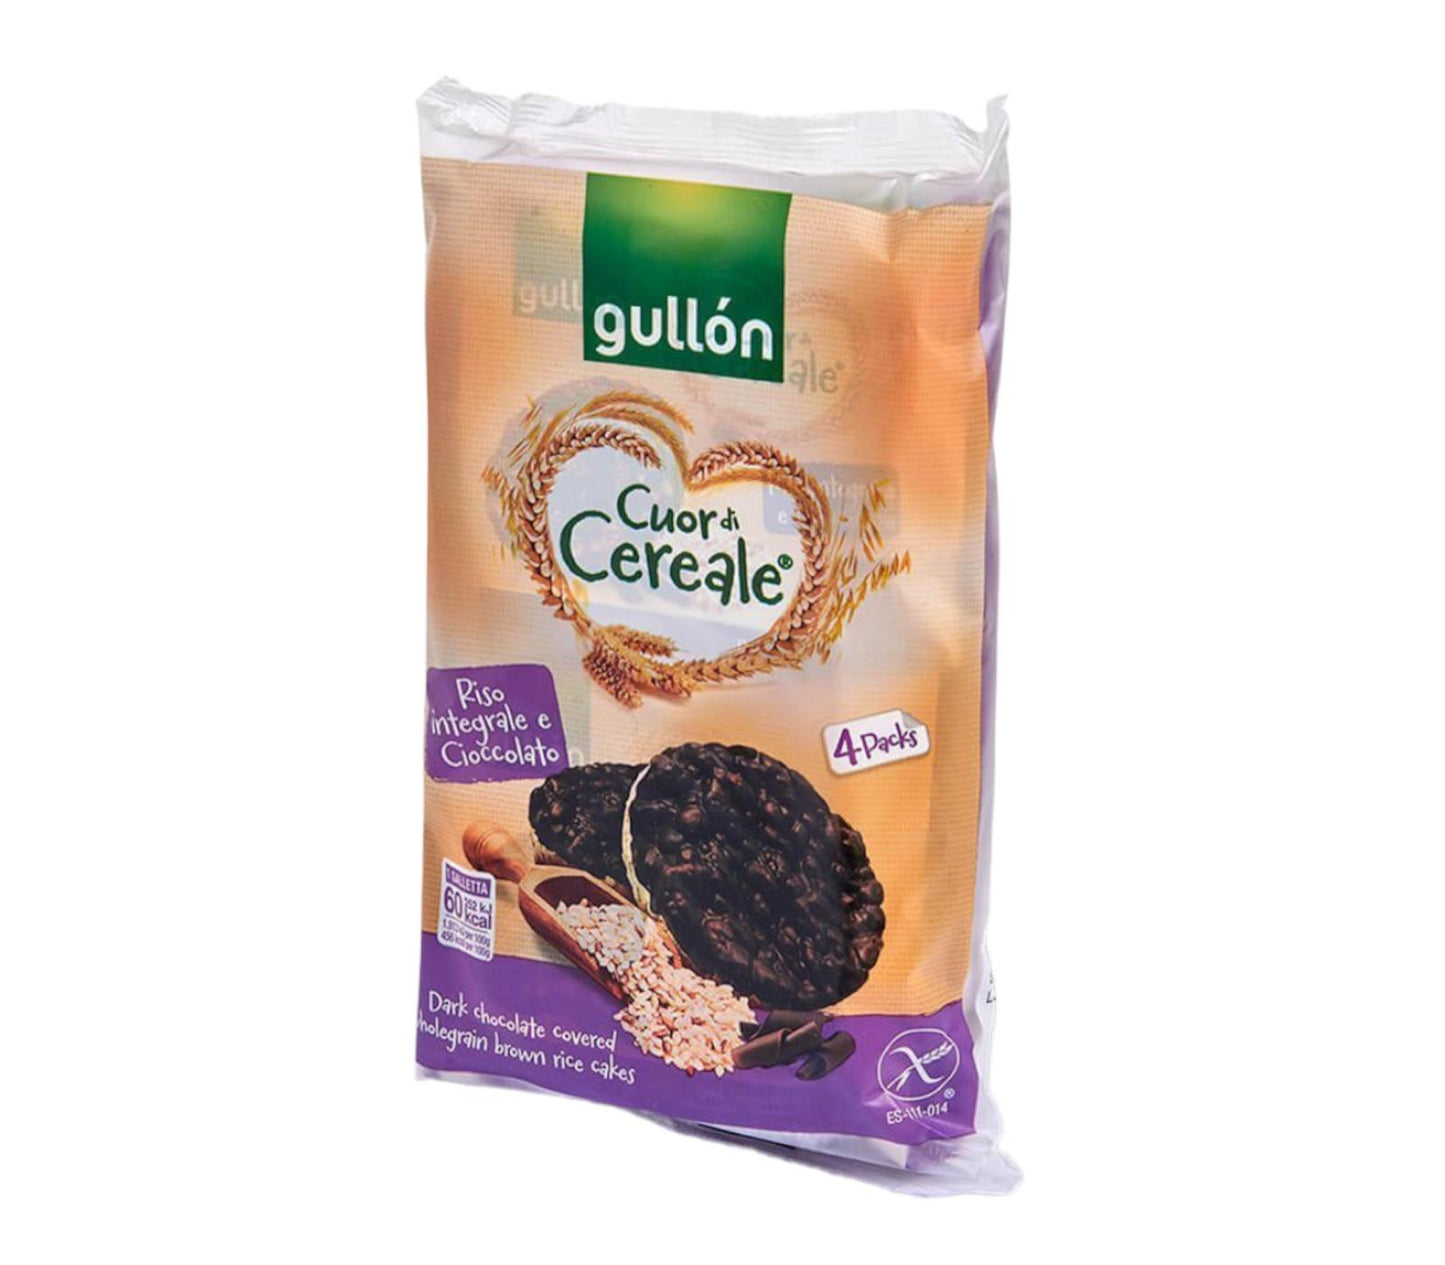 Gullon Gallete di riso integrale ricoperte di cioccolato fondente senza glutine Cuor di Cereale confezione da 105g